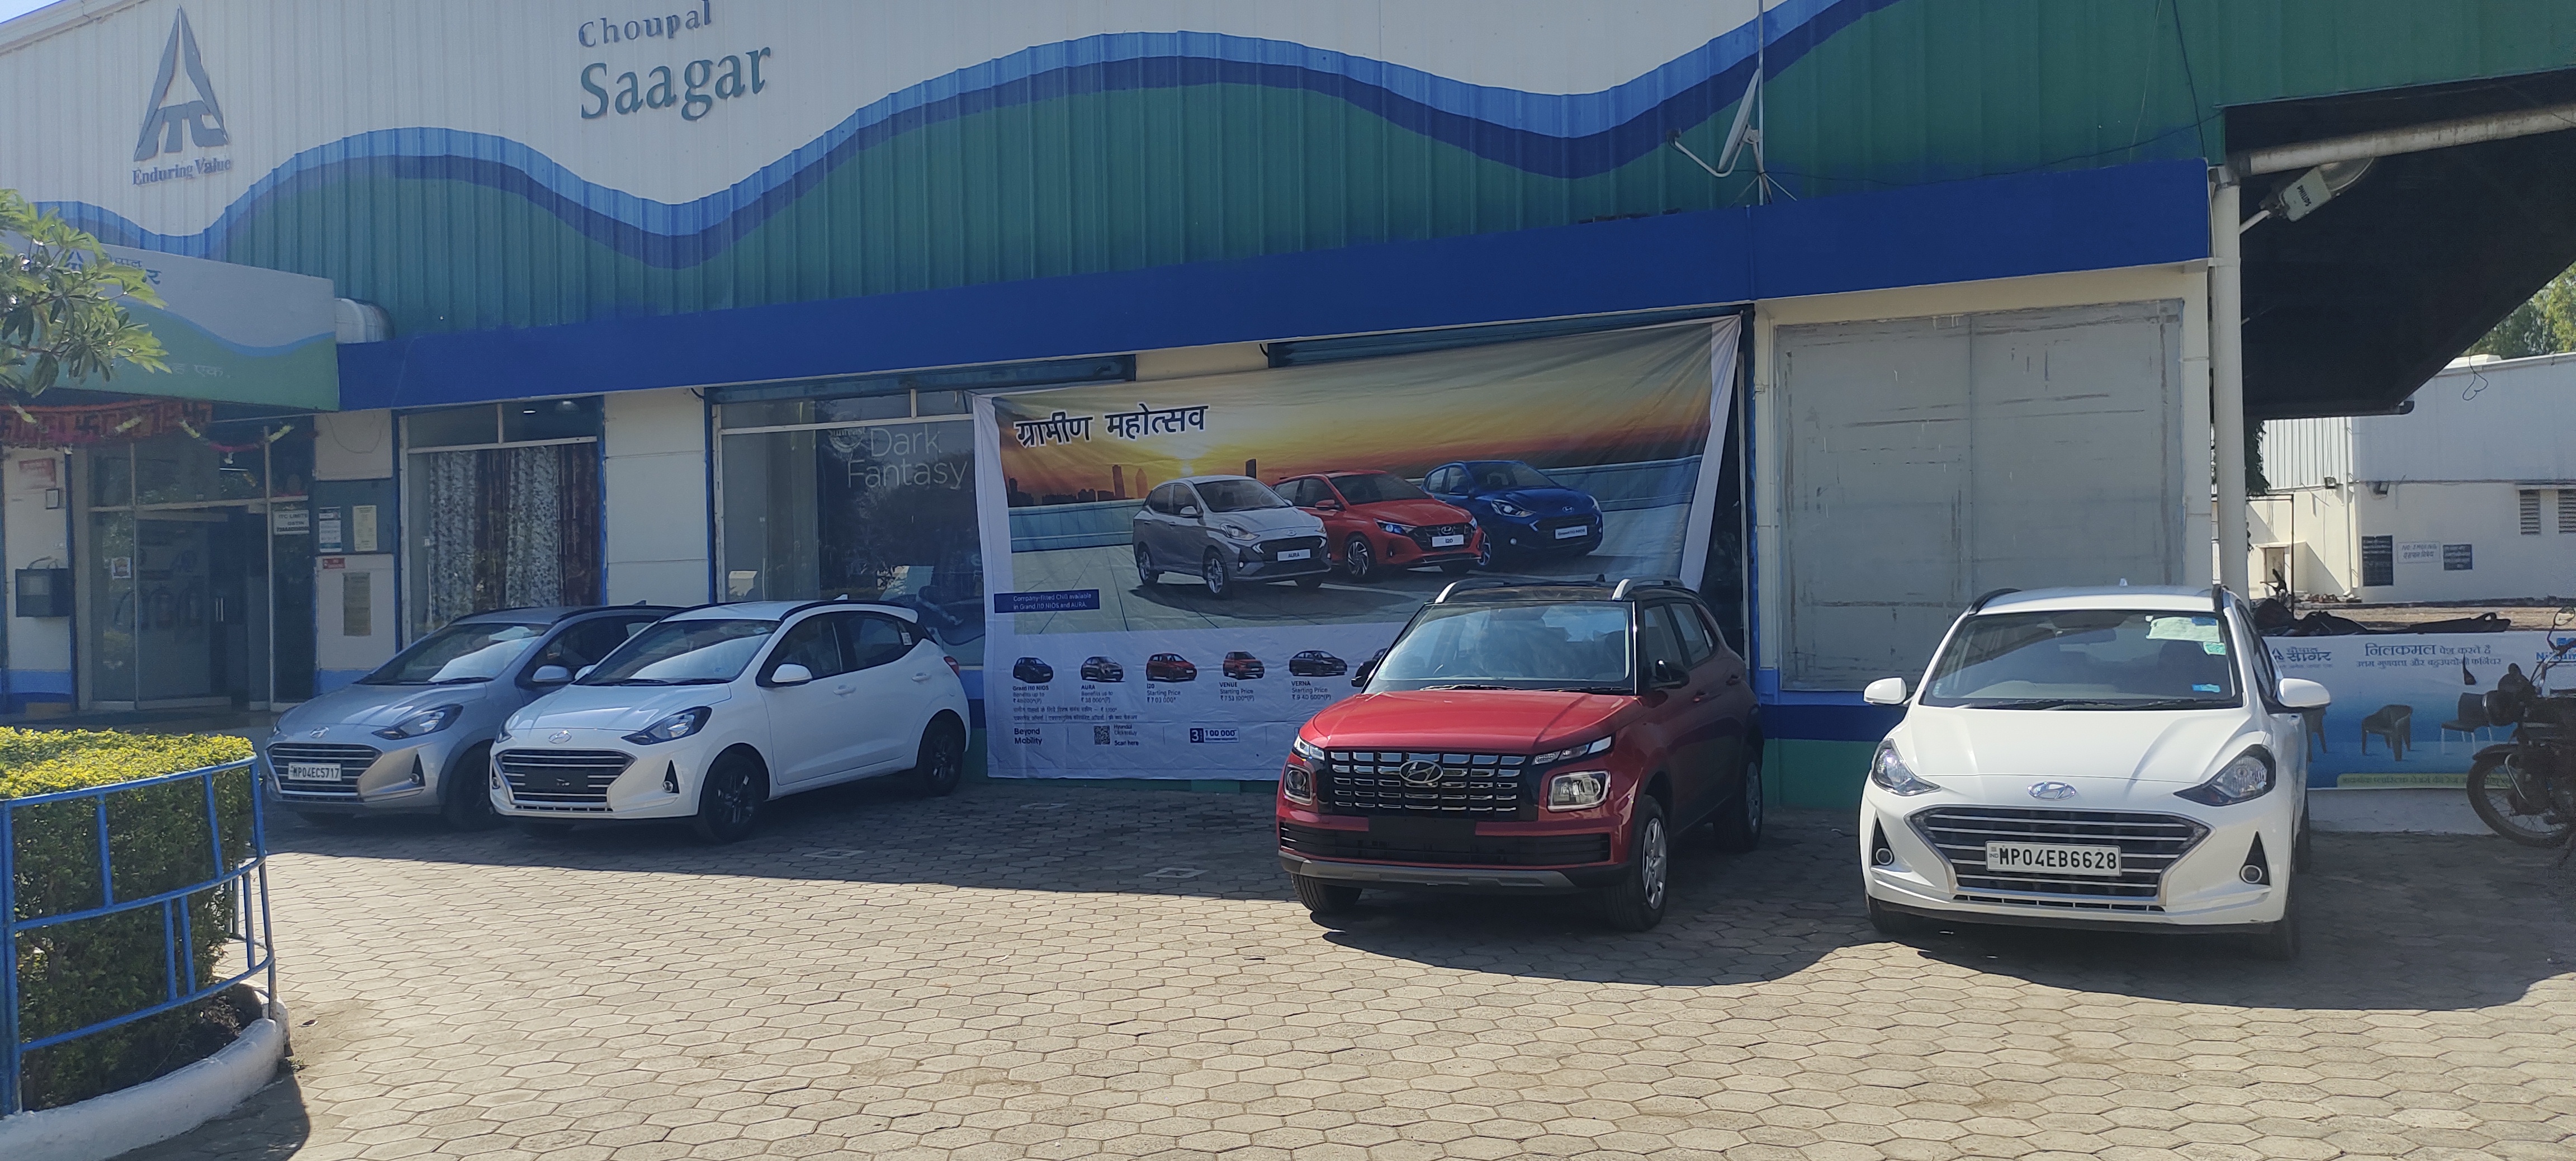 Hyundai motors partnered with ITC, Cars at Choupal Saagar platform